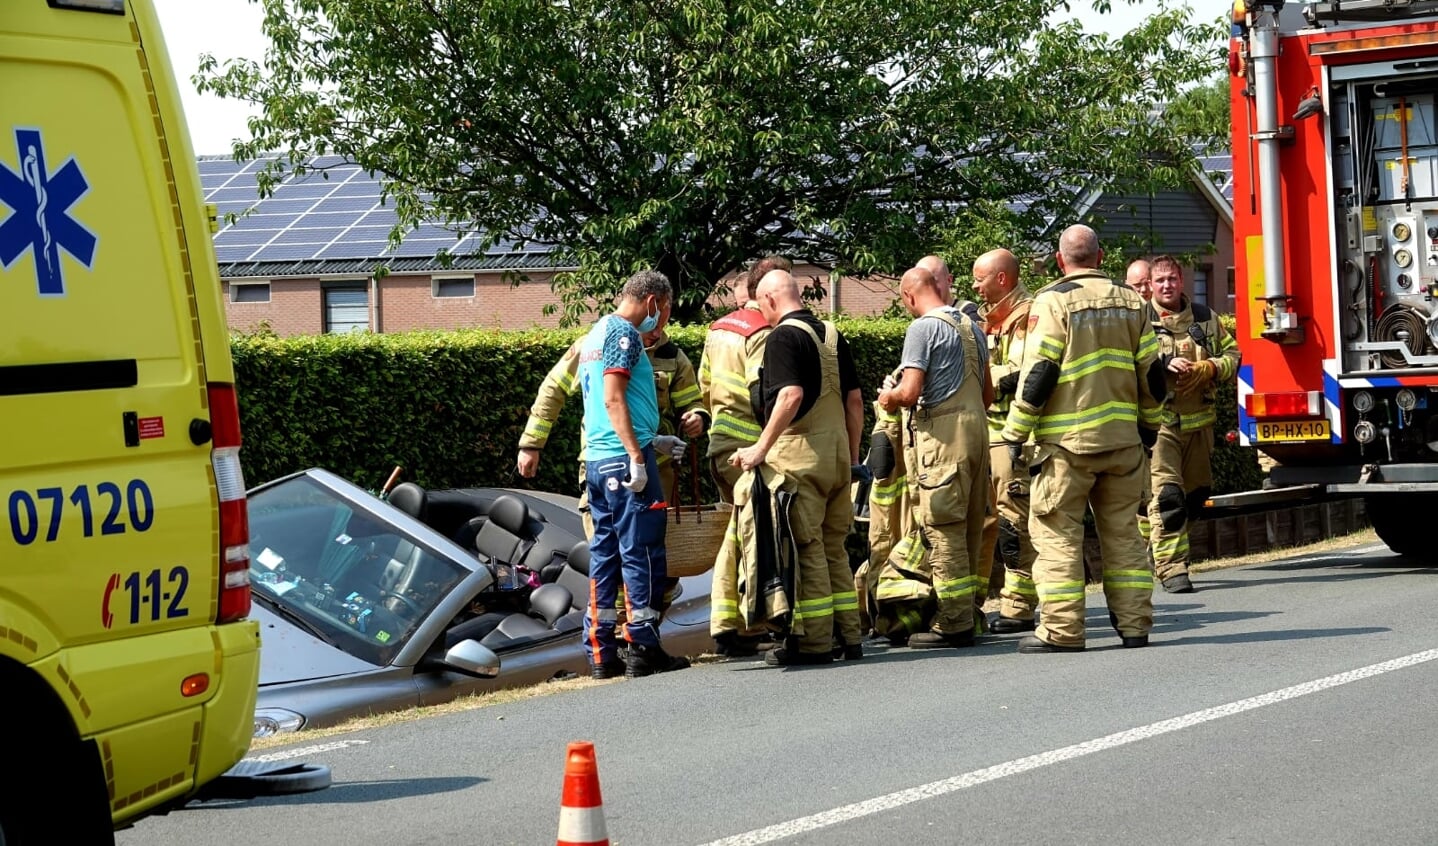  De bestuurster van een cabriolet is dinsdagmiddag op de Harderwijkerweg (N310) in Harskamp van de weg geraakt en in een lege sloot terechtgekomen.